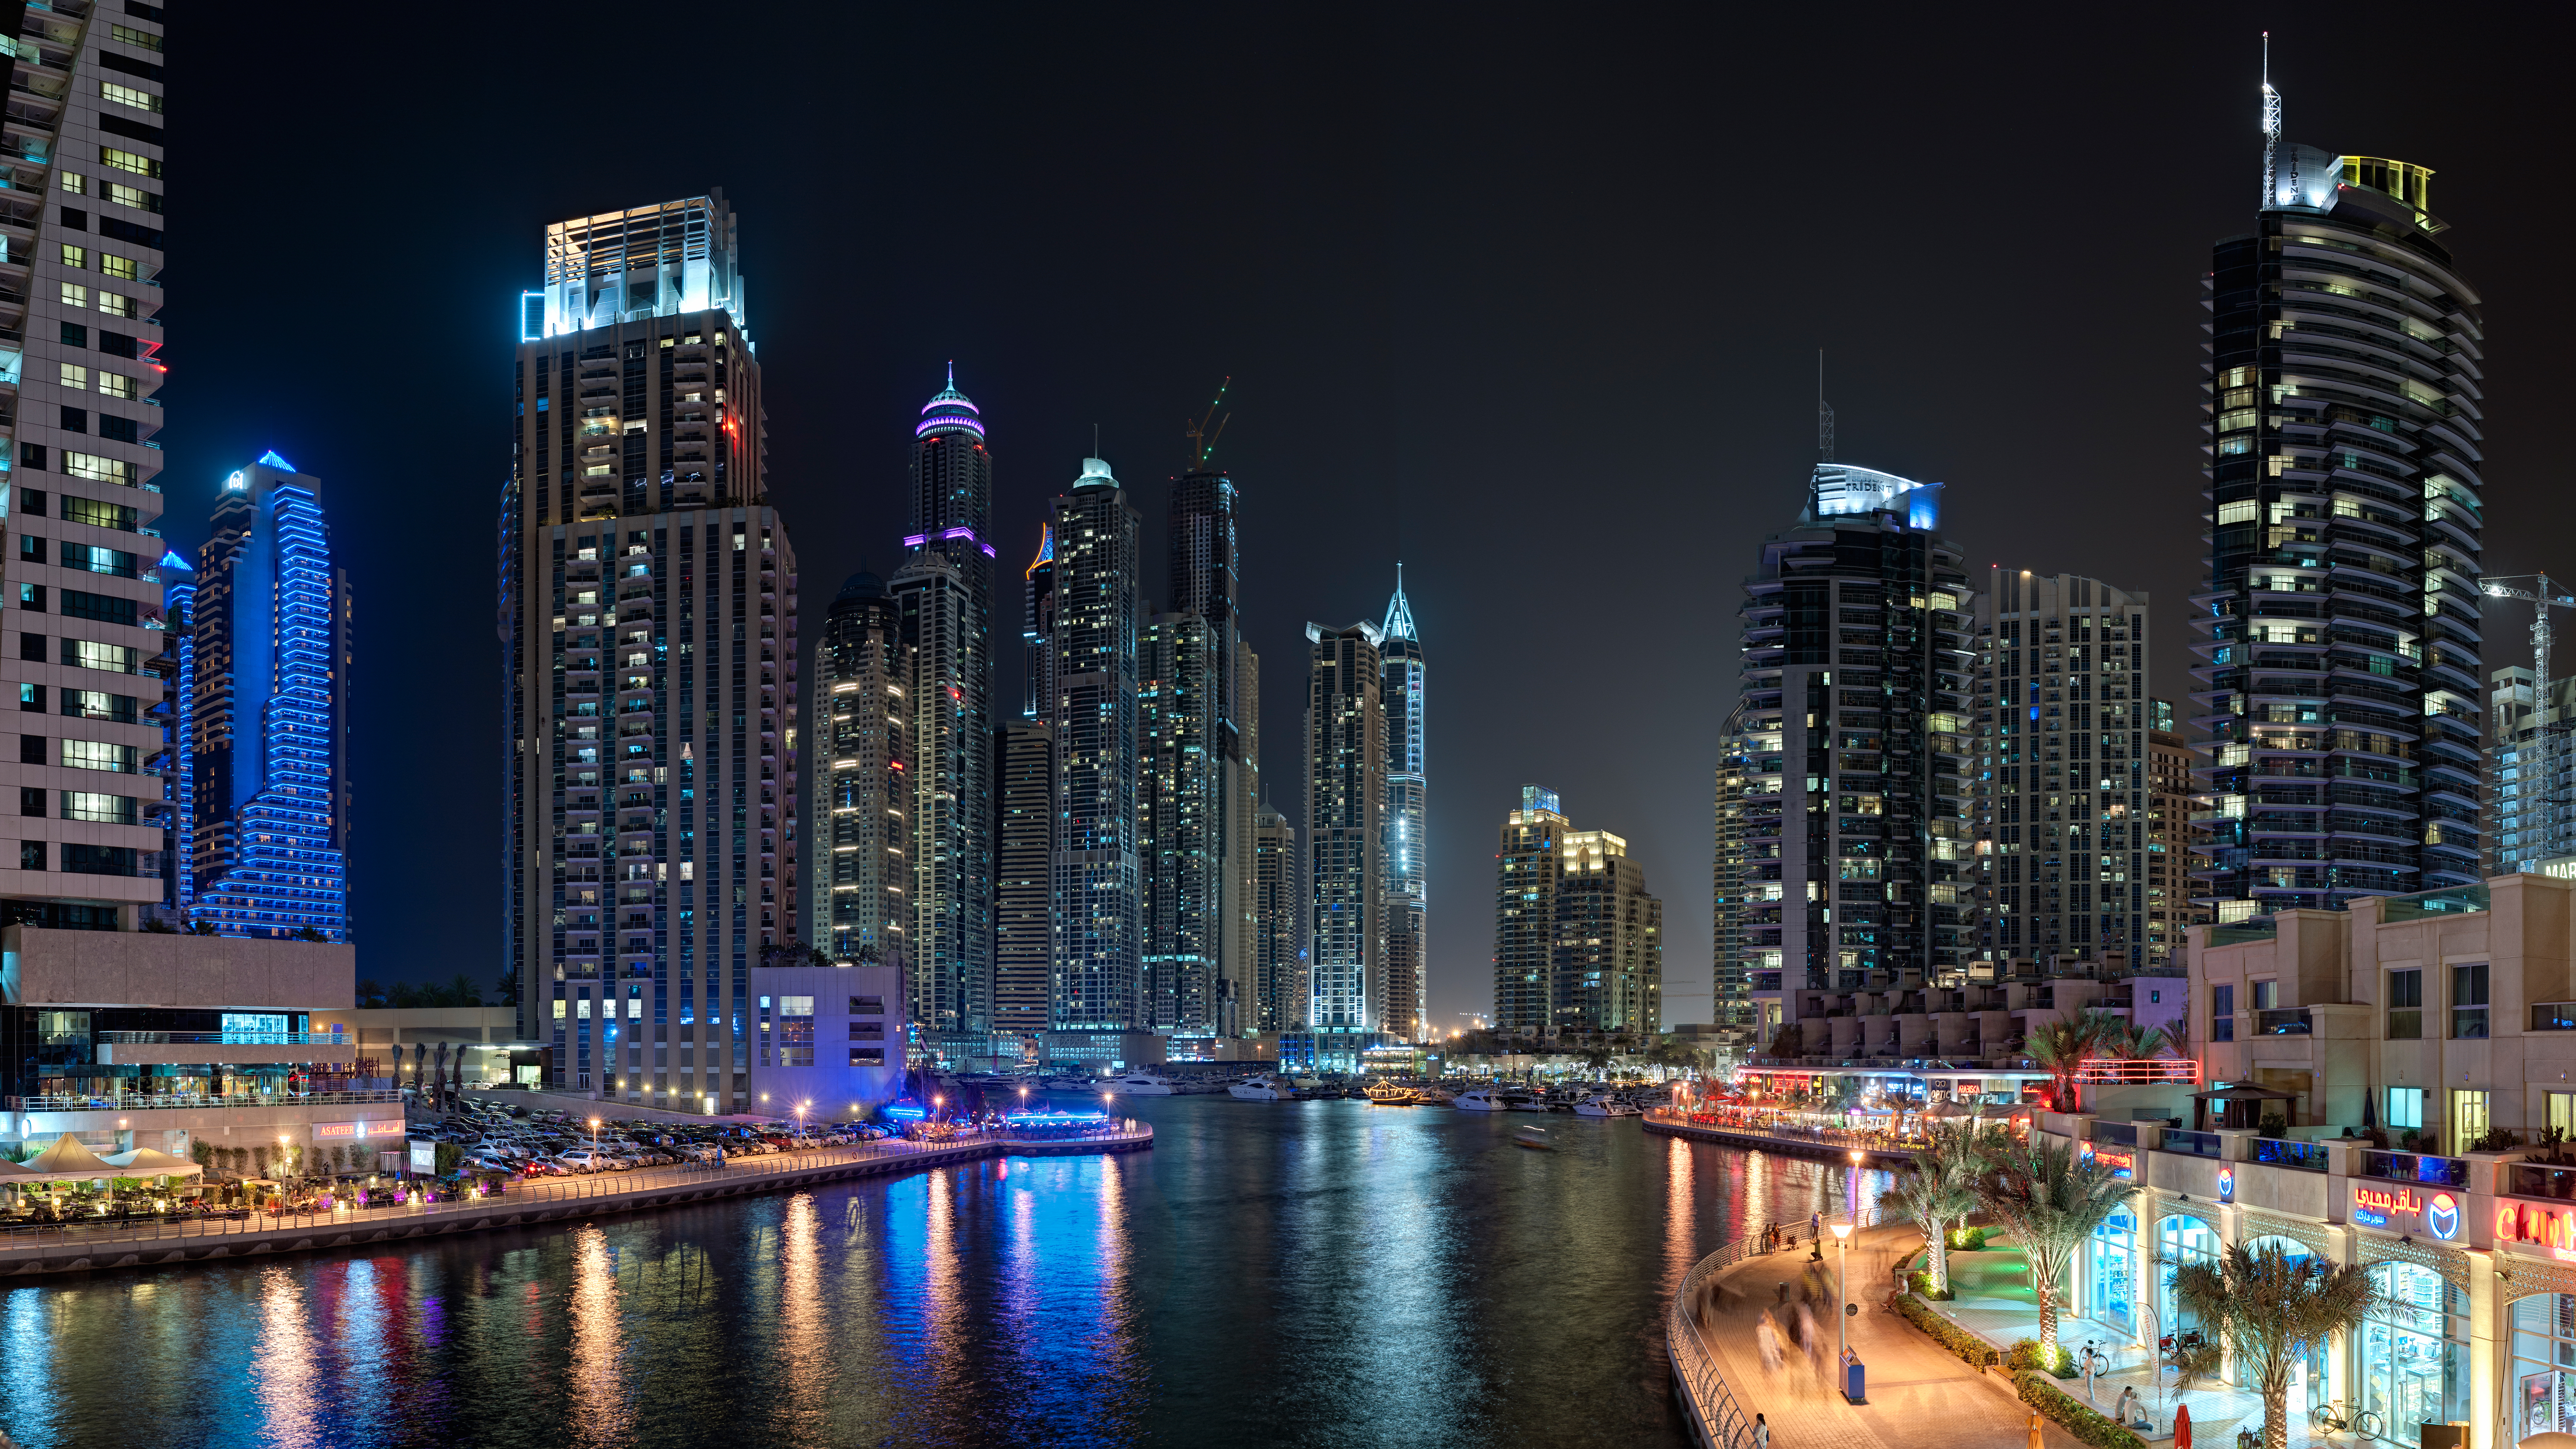 8К обои, 7680x4320, ночной город, Дубаи, ОАЭ, небоскребы, набережная, курортный город, night city, Dubai, UAE, skyscrapers, quay, resort town